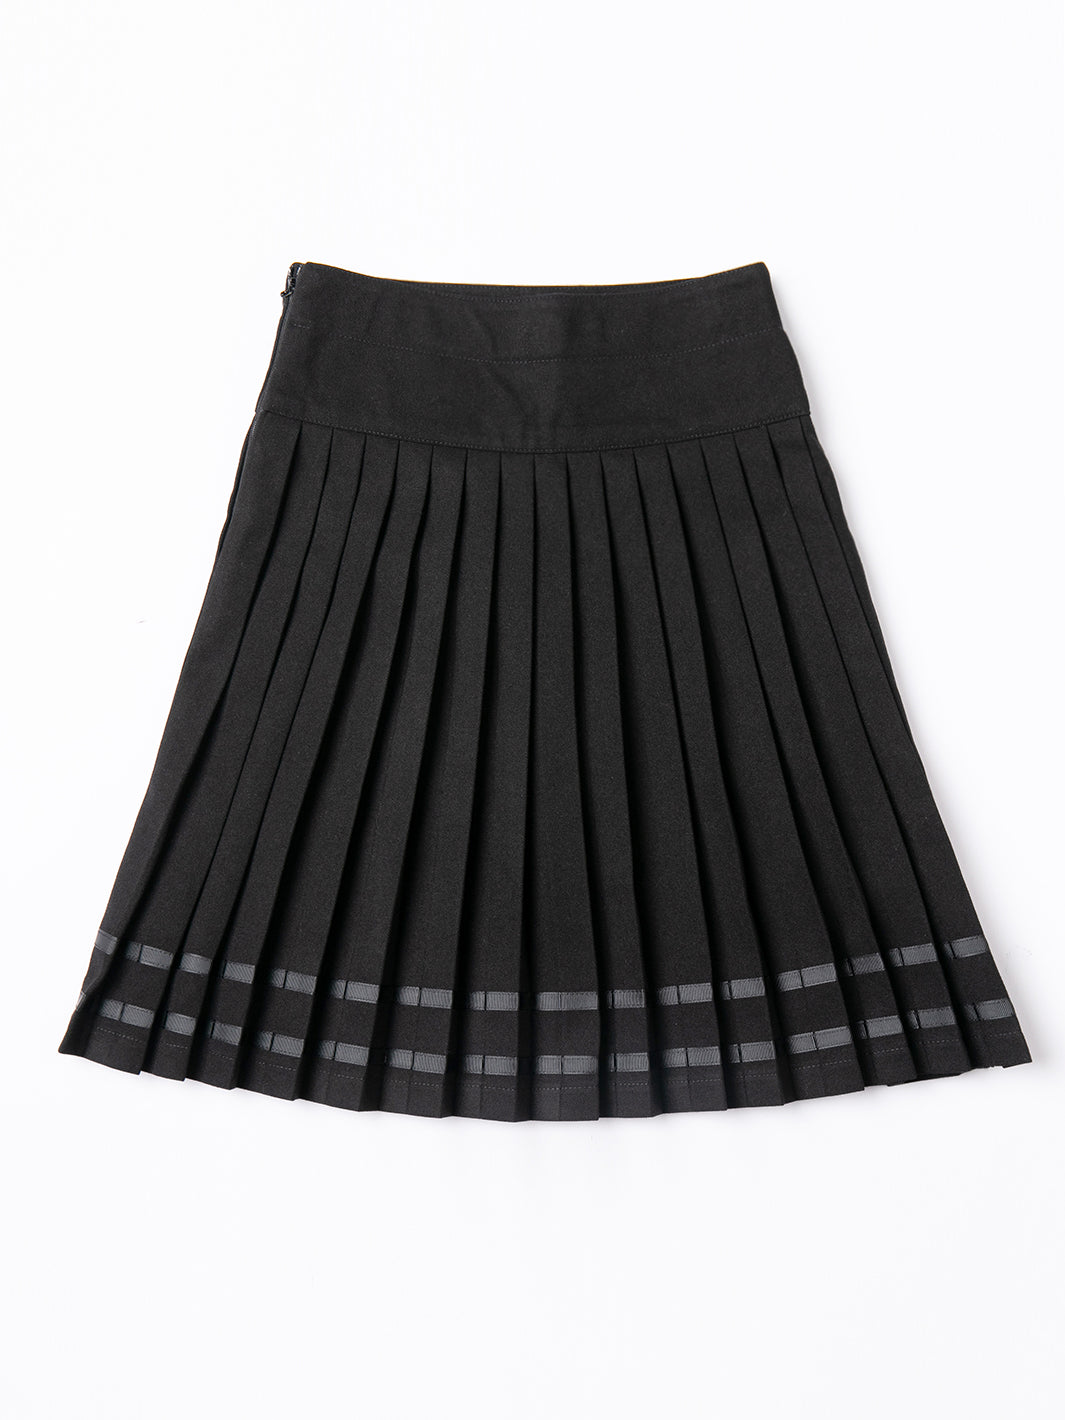 Knife Pleats Ribbon Skirt - Black